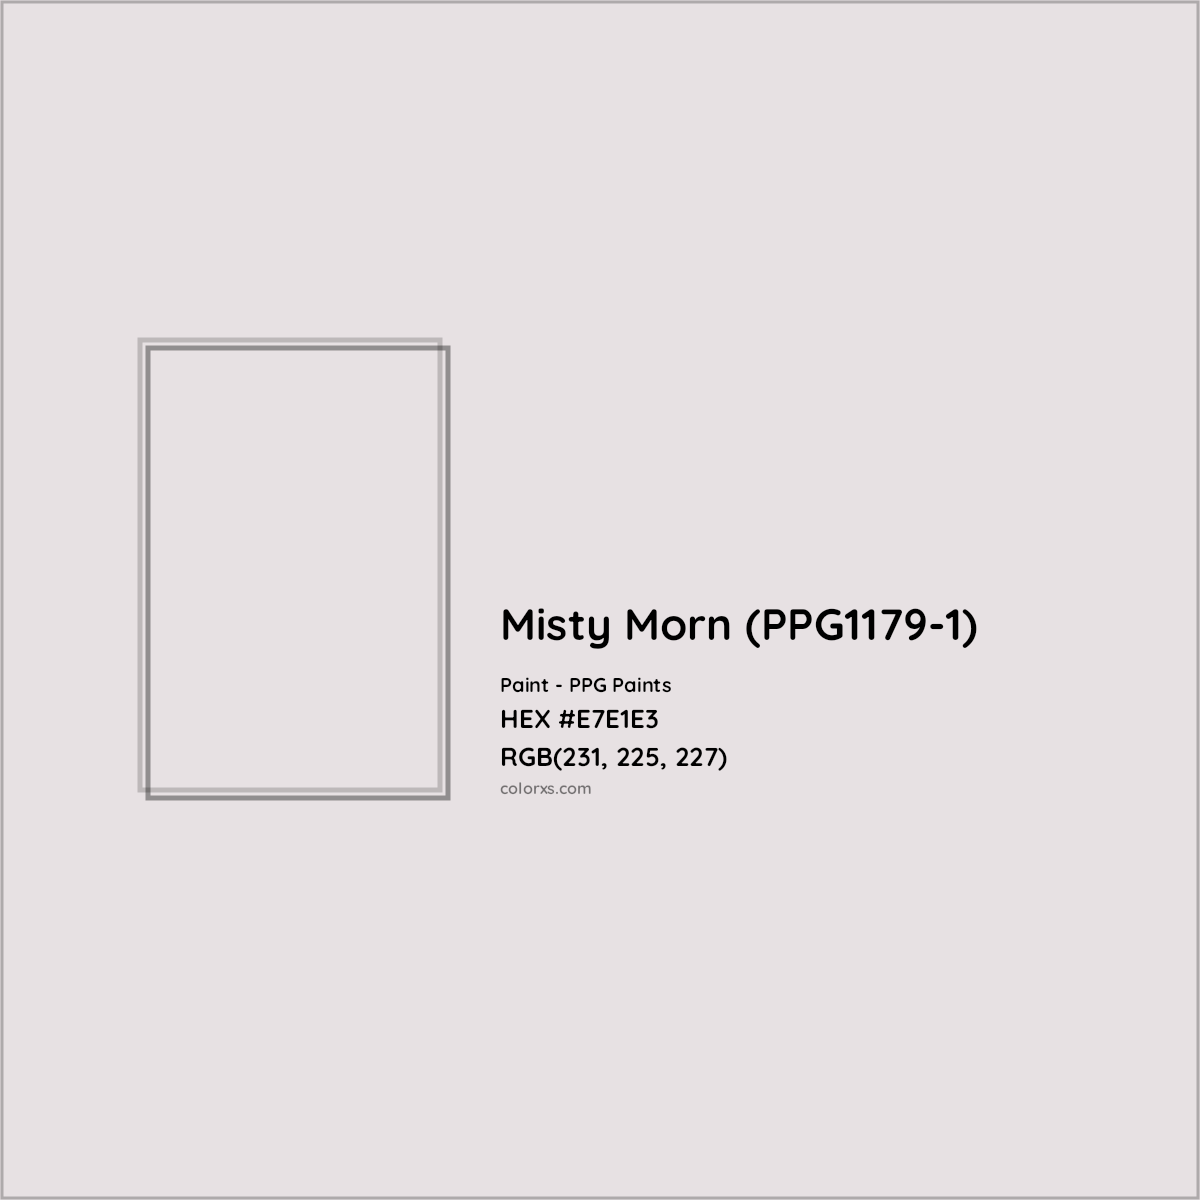 HEX #E7E1E3 Misty Morn (PPG1179-1) Paint PPG Paints - Color Code